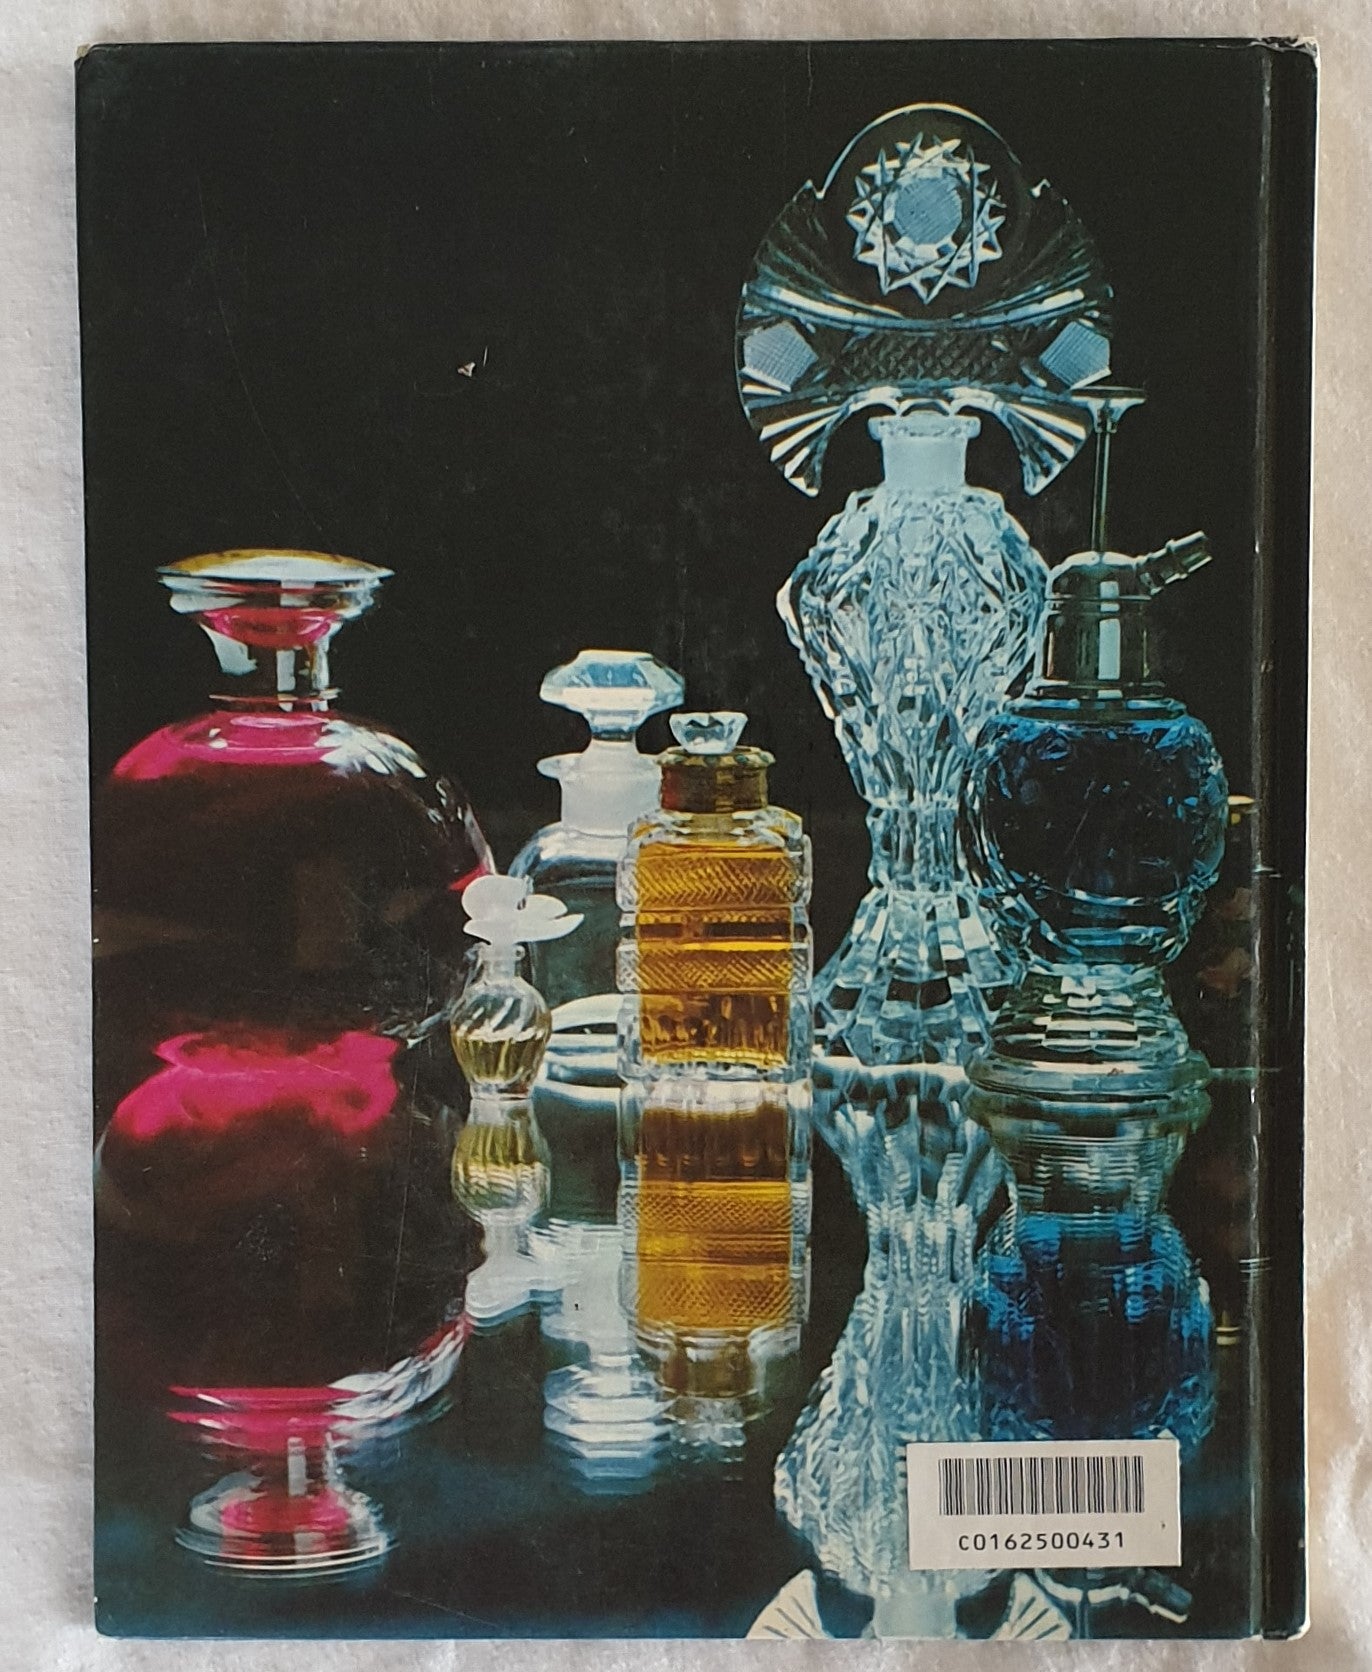 Perfumery - Glen Pownall's Creative Leisure Series